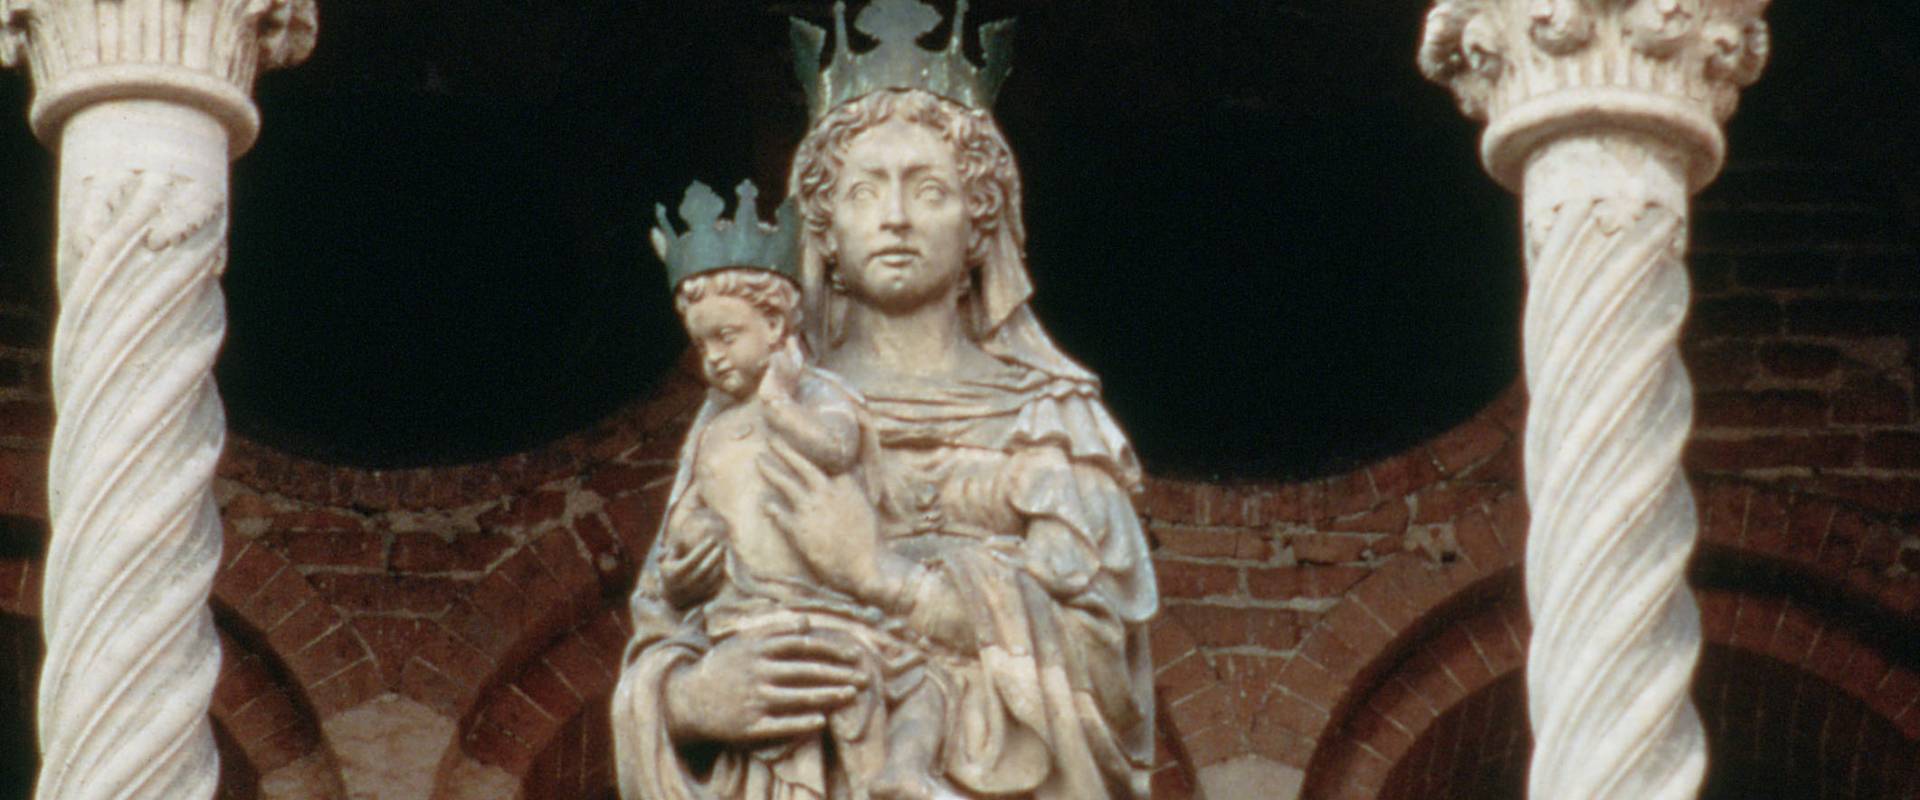 Cattedrale. Madonna col Bambino foto di Rebeschini